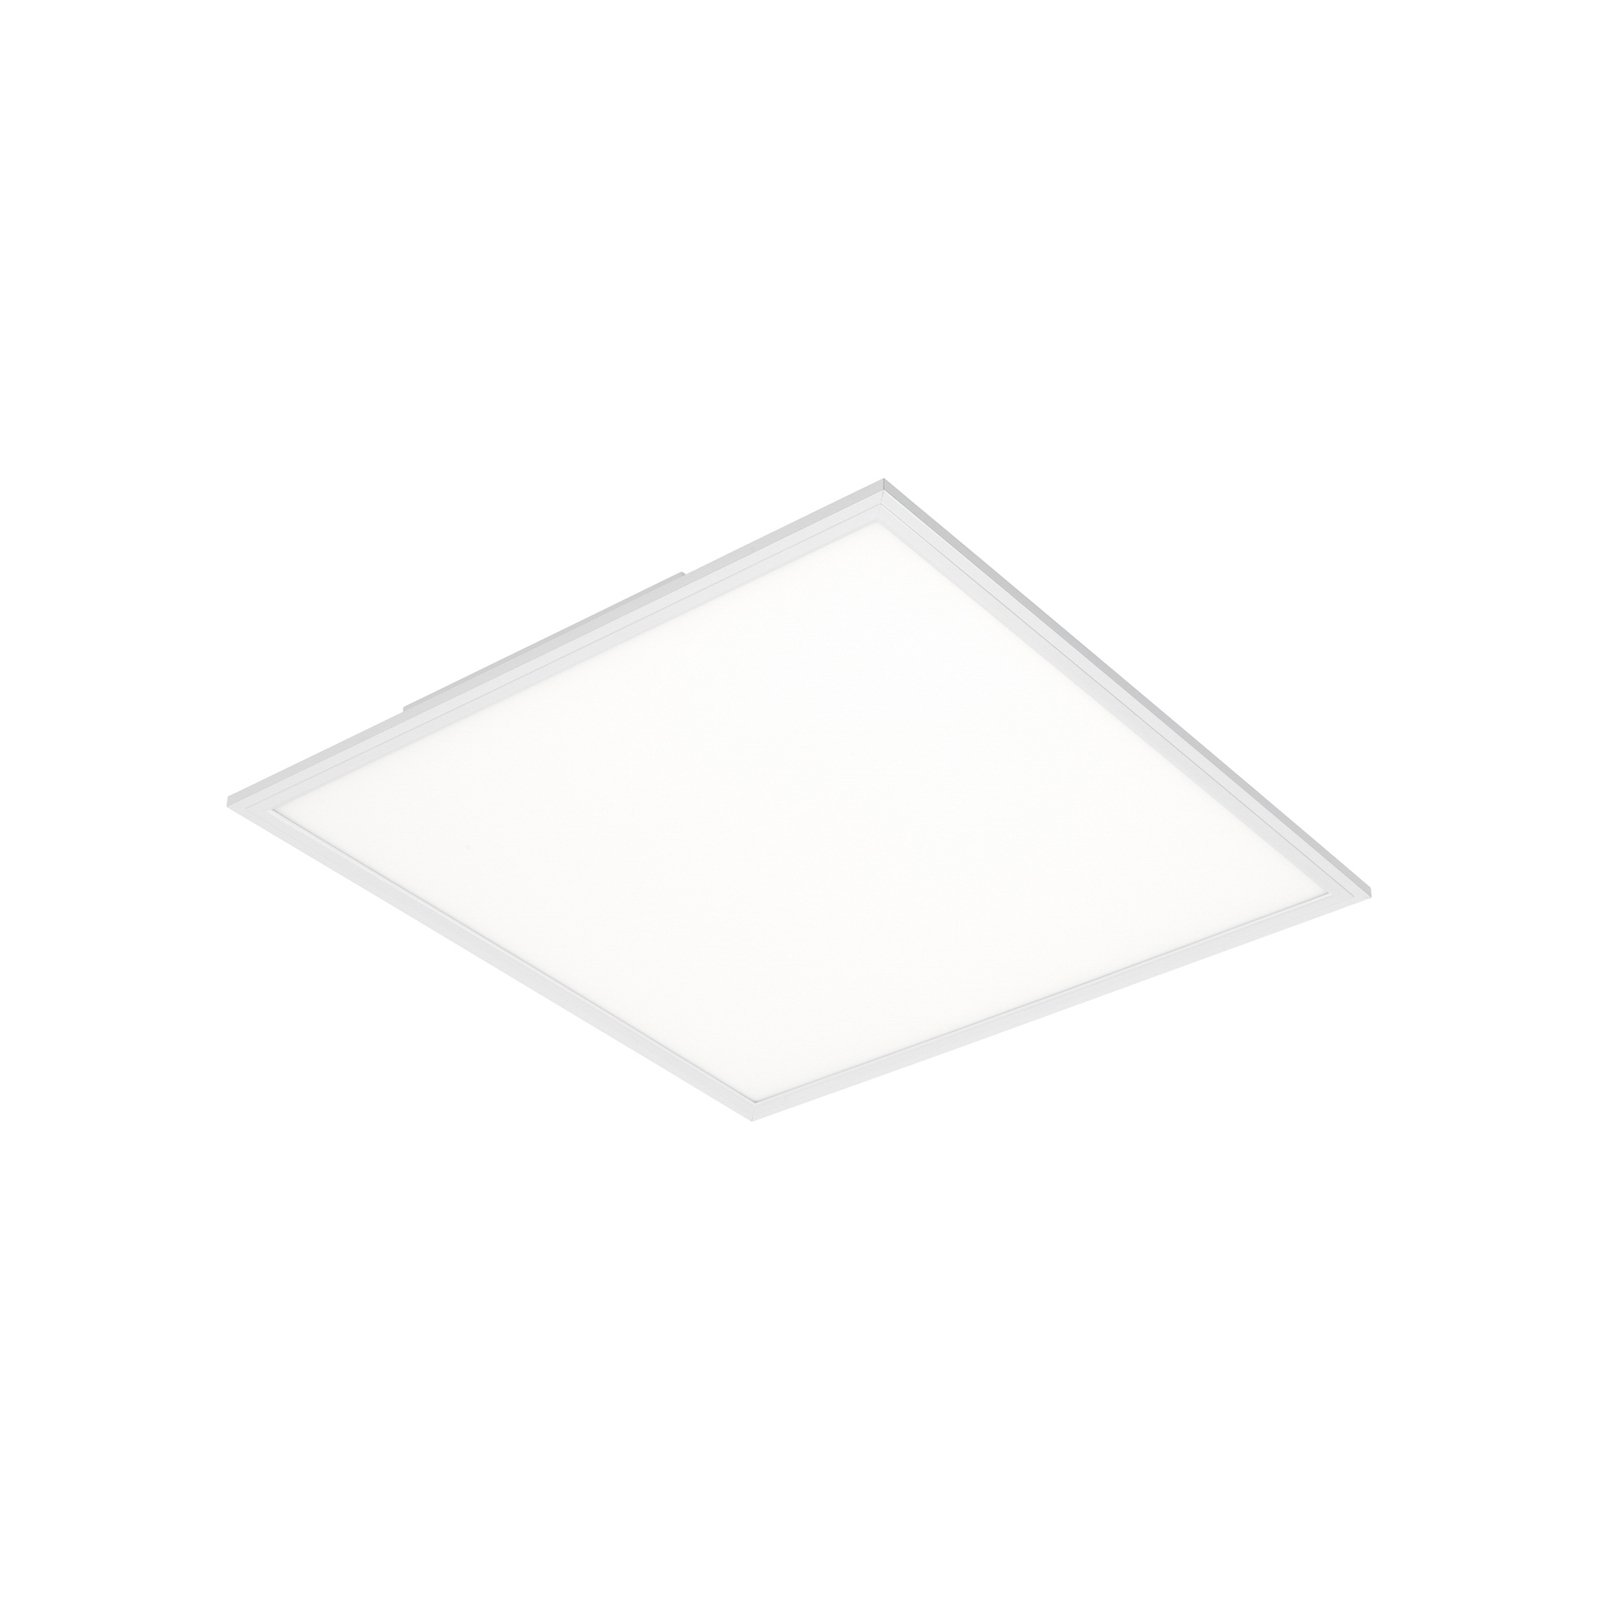 LED панел Обикновен бял, ултраплосък, 59,5x59,5 см